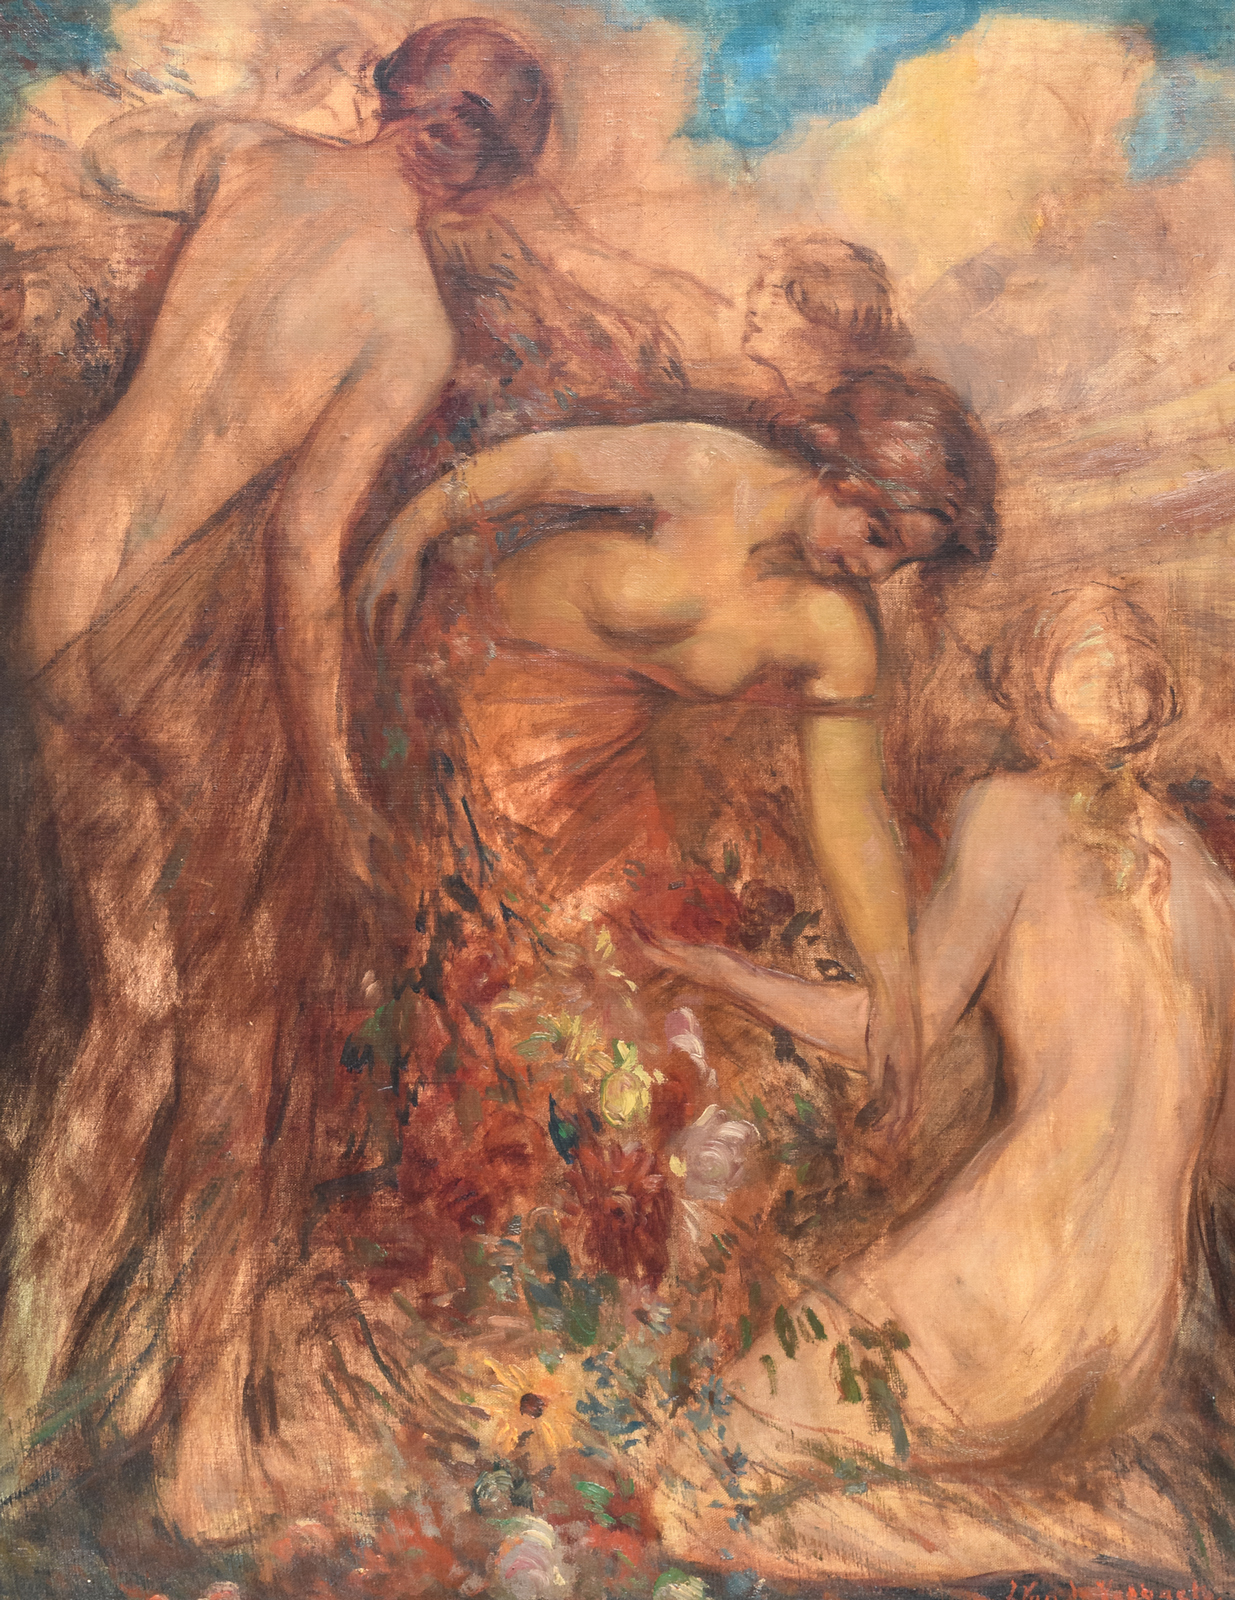 Van de Veegaete J., graceful nymphs in a landscape, oil on canvas, 71 x 91 cm